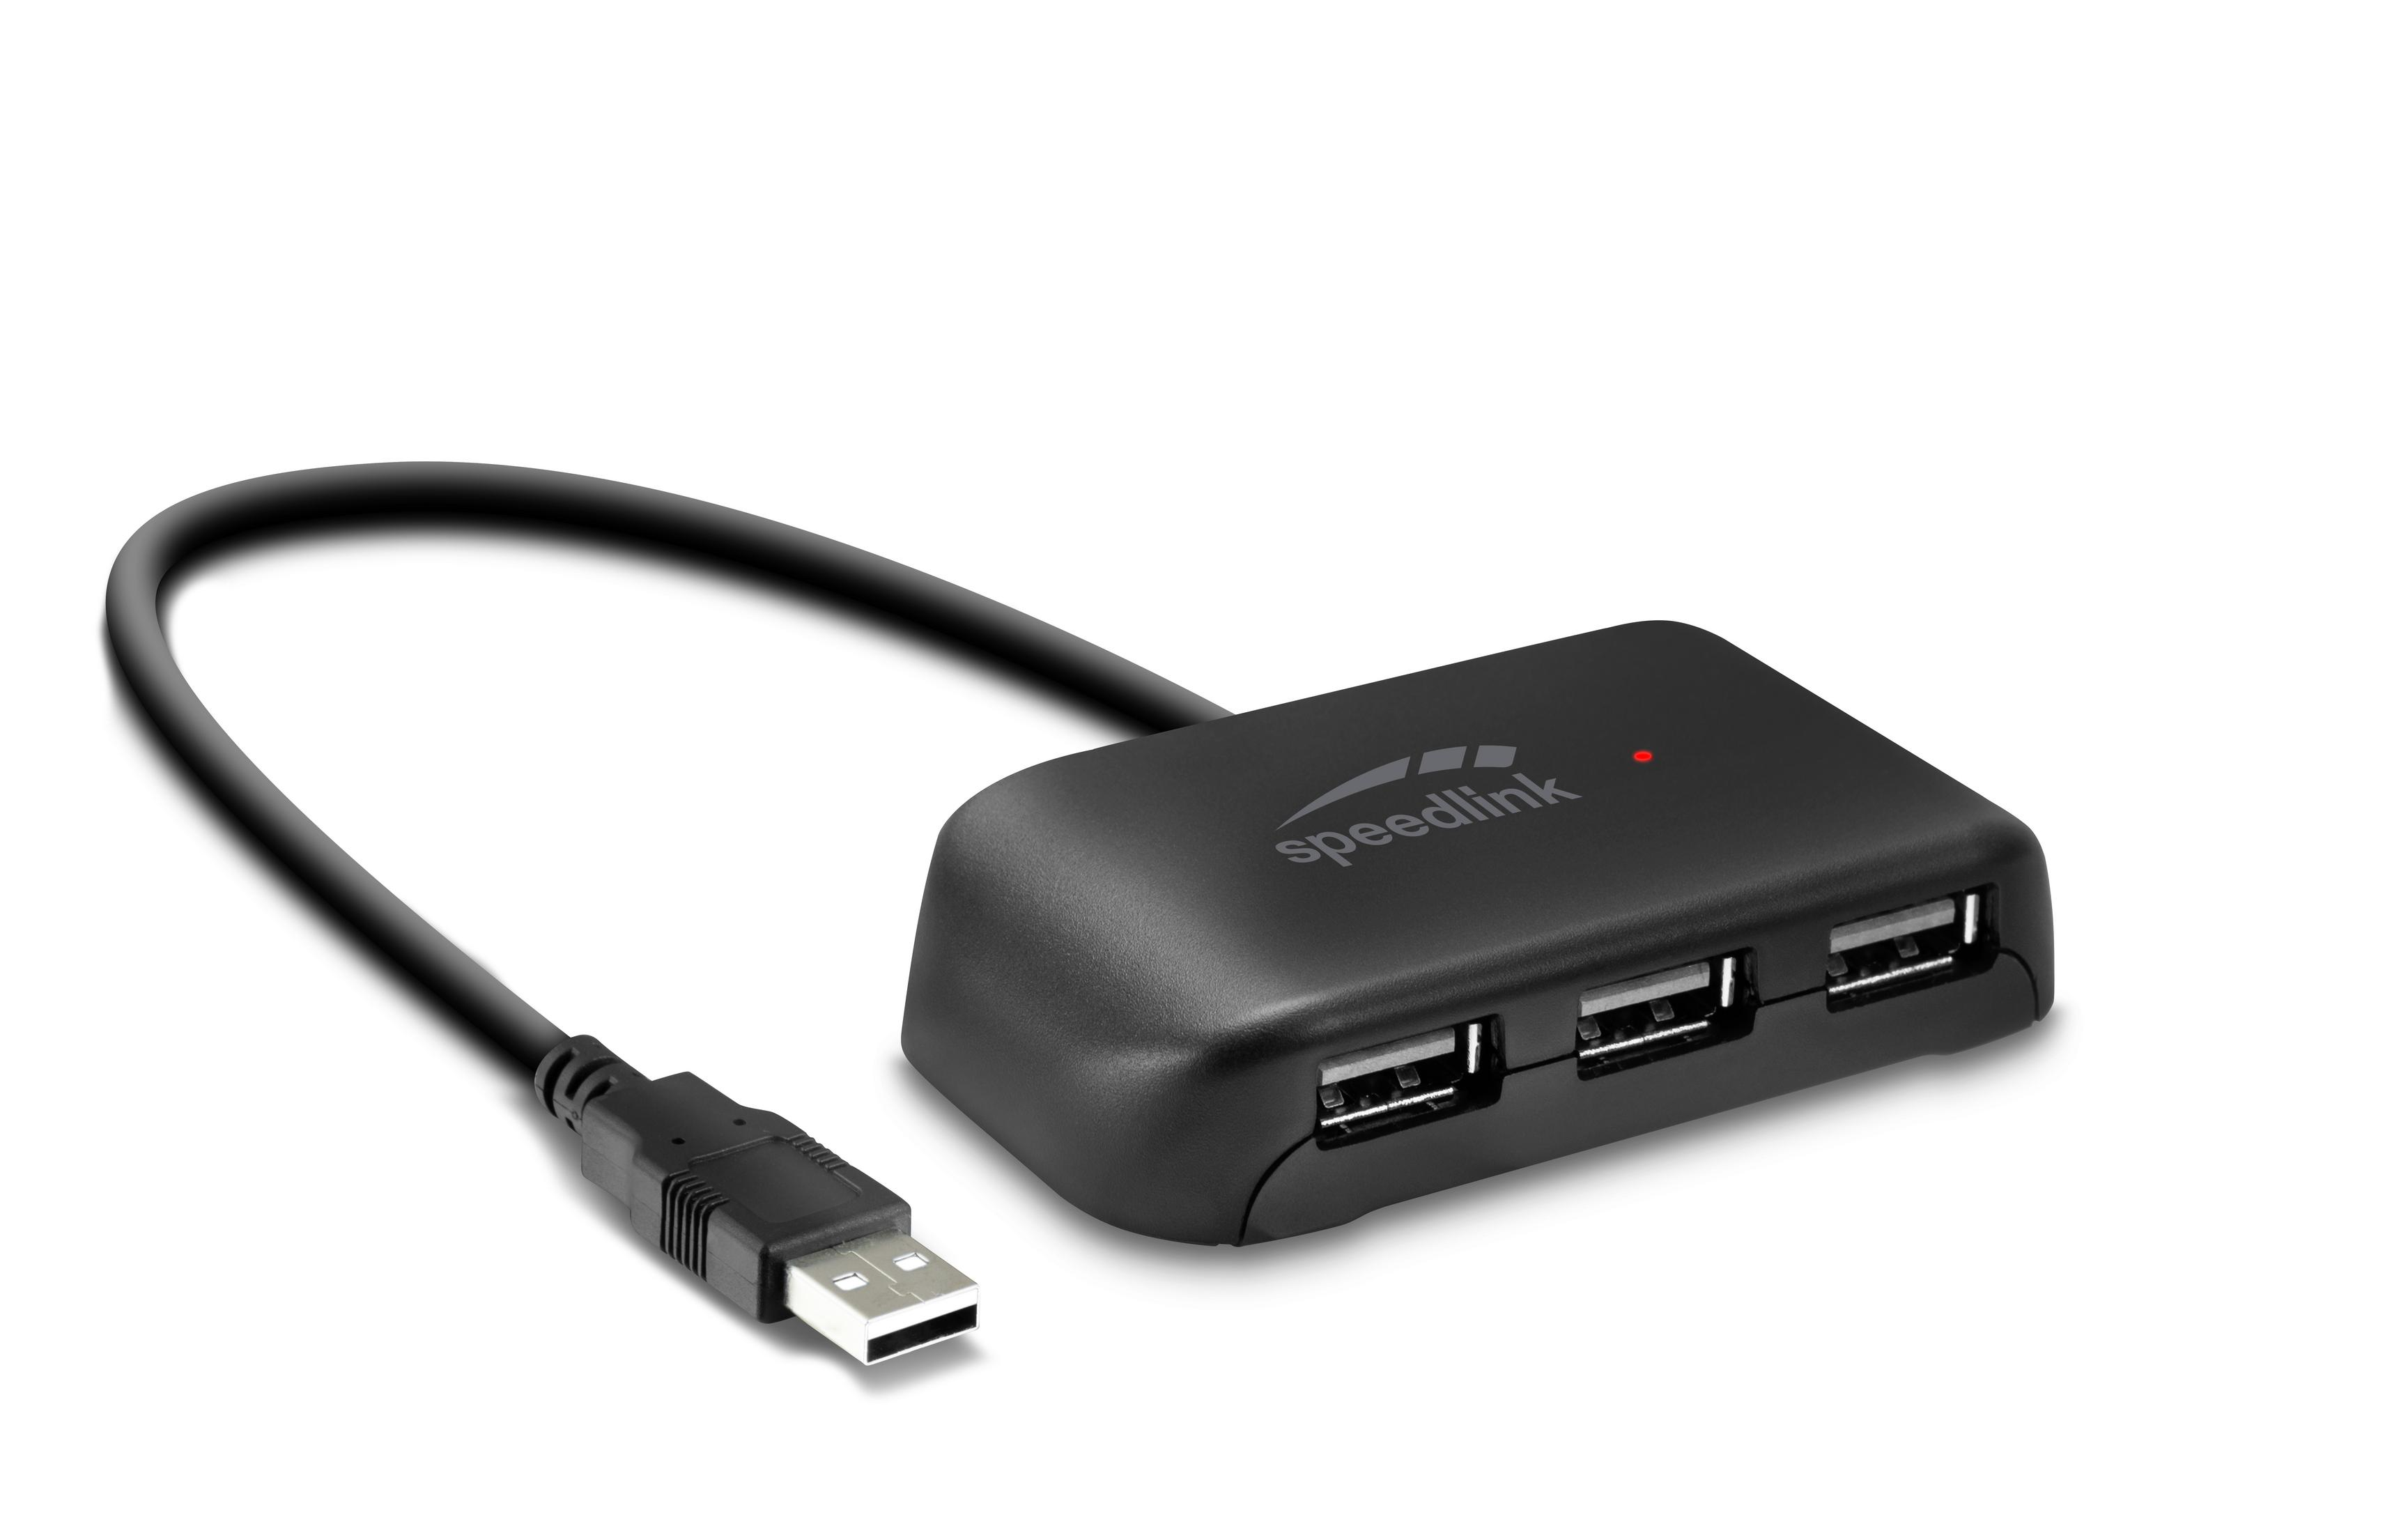 SL-140004-BK USB HUB EVO 2.0, Schwarz USB Hub, SNAPPY SPEEDLINK 4-PORT